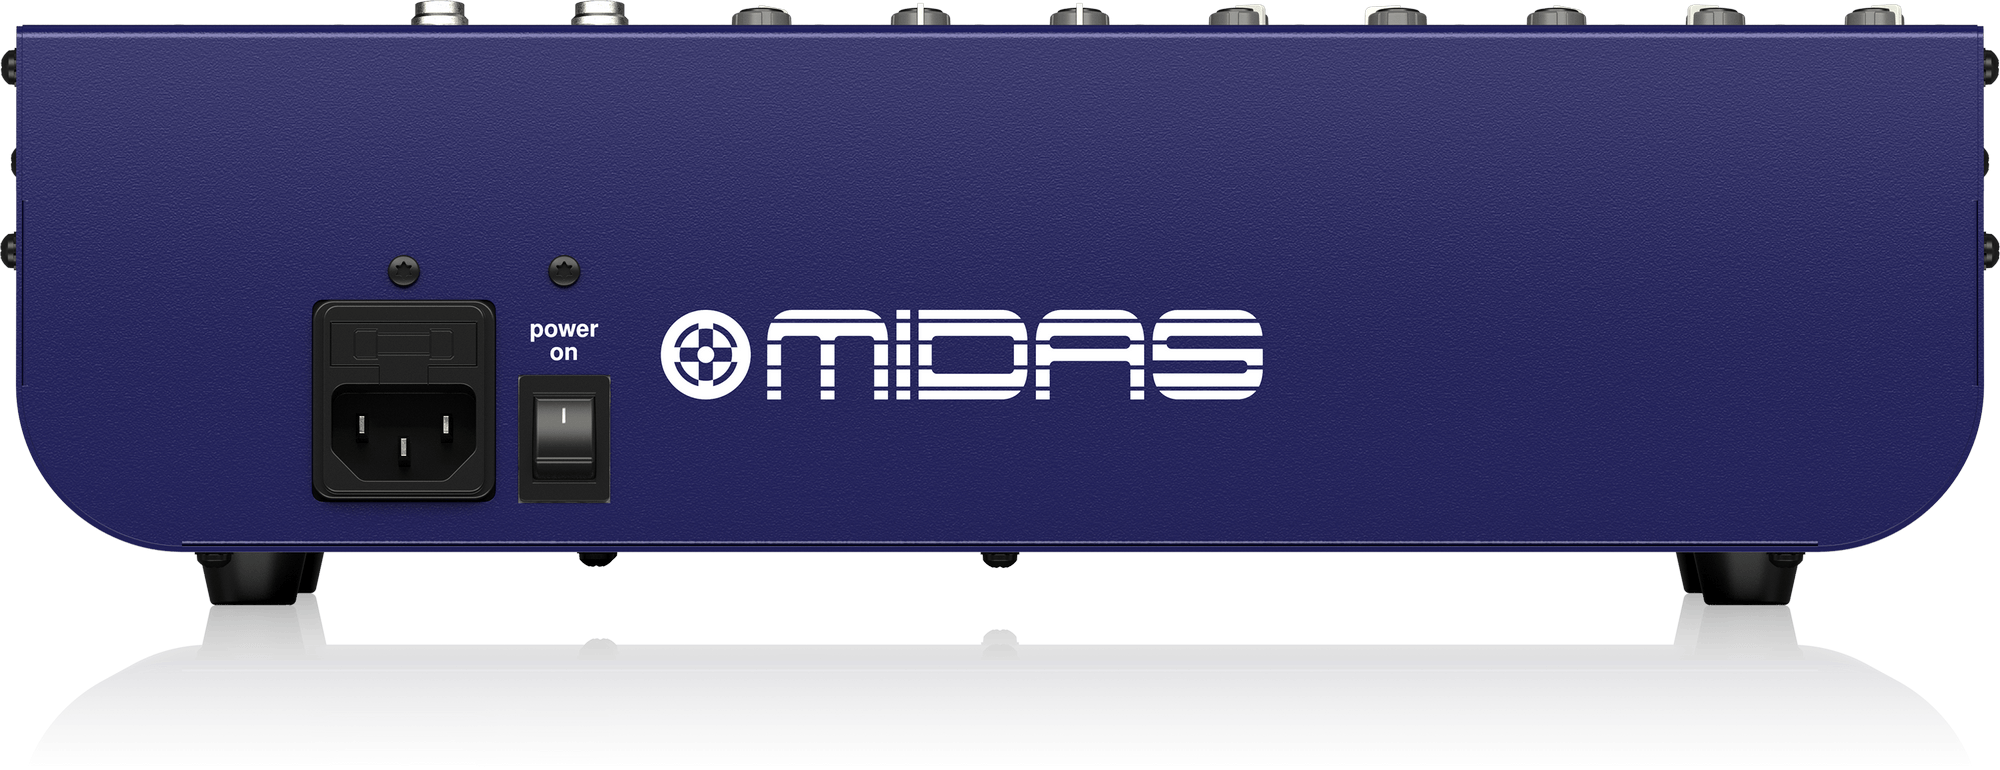 Midas DDA DM12 - аналоговый микшер, 12 каналов (2 стерео), 8 мик.преампов MIDAS, 8 инсертов, 2 AUX купить в prostore.me